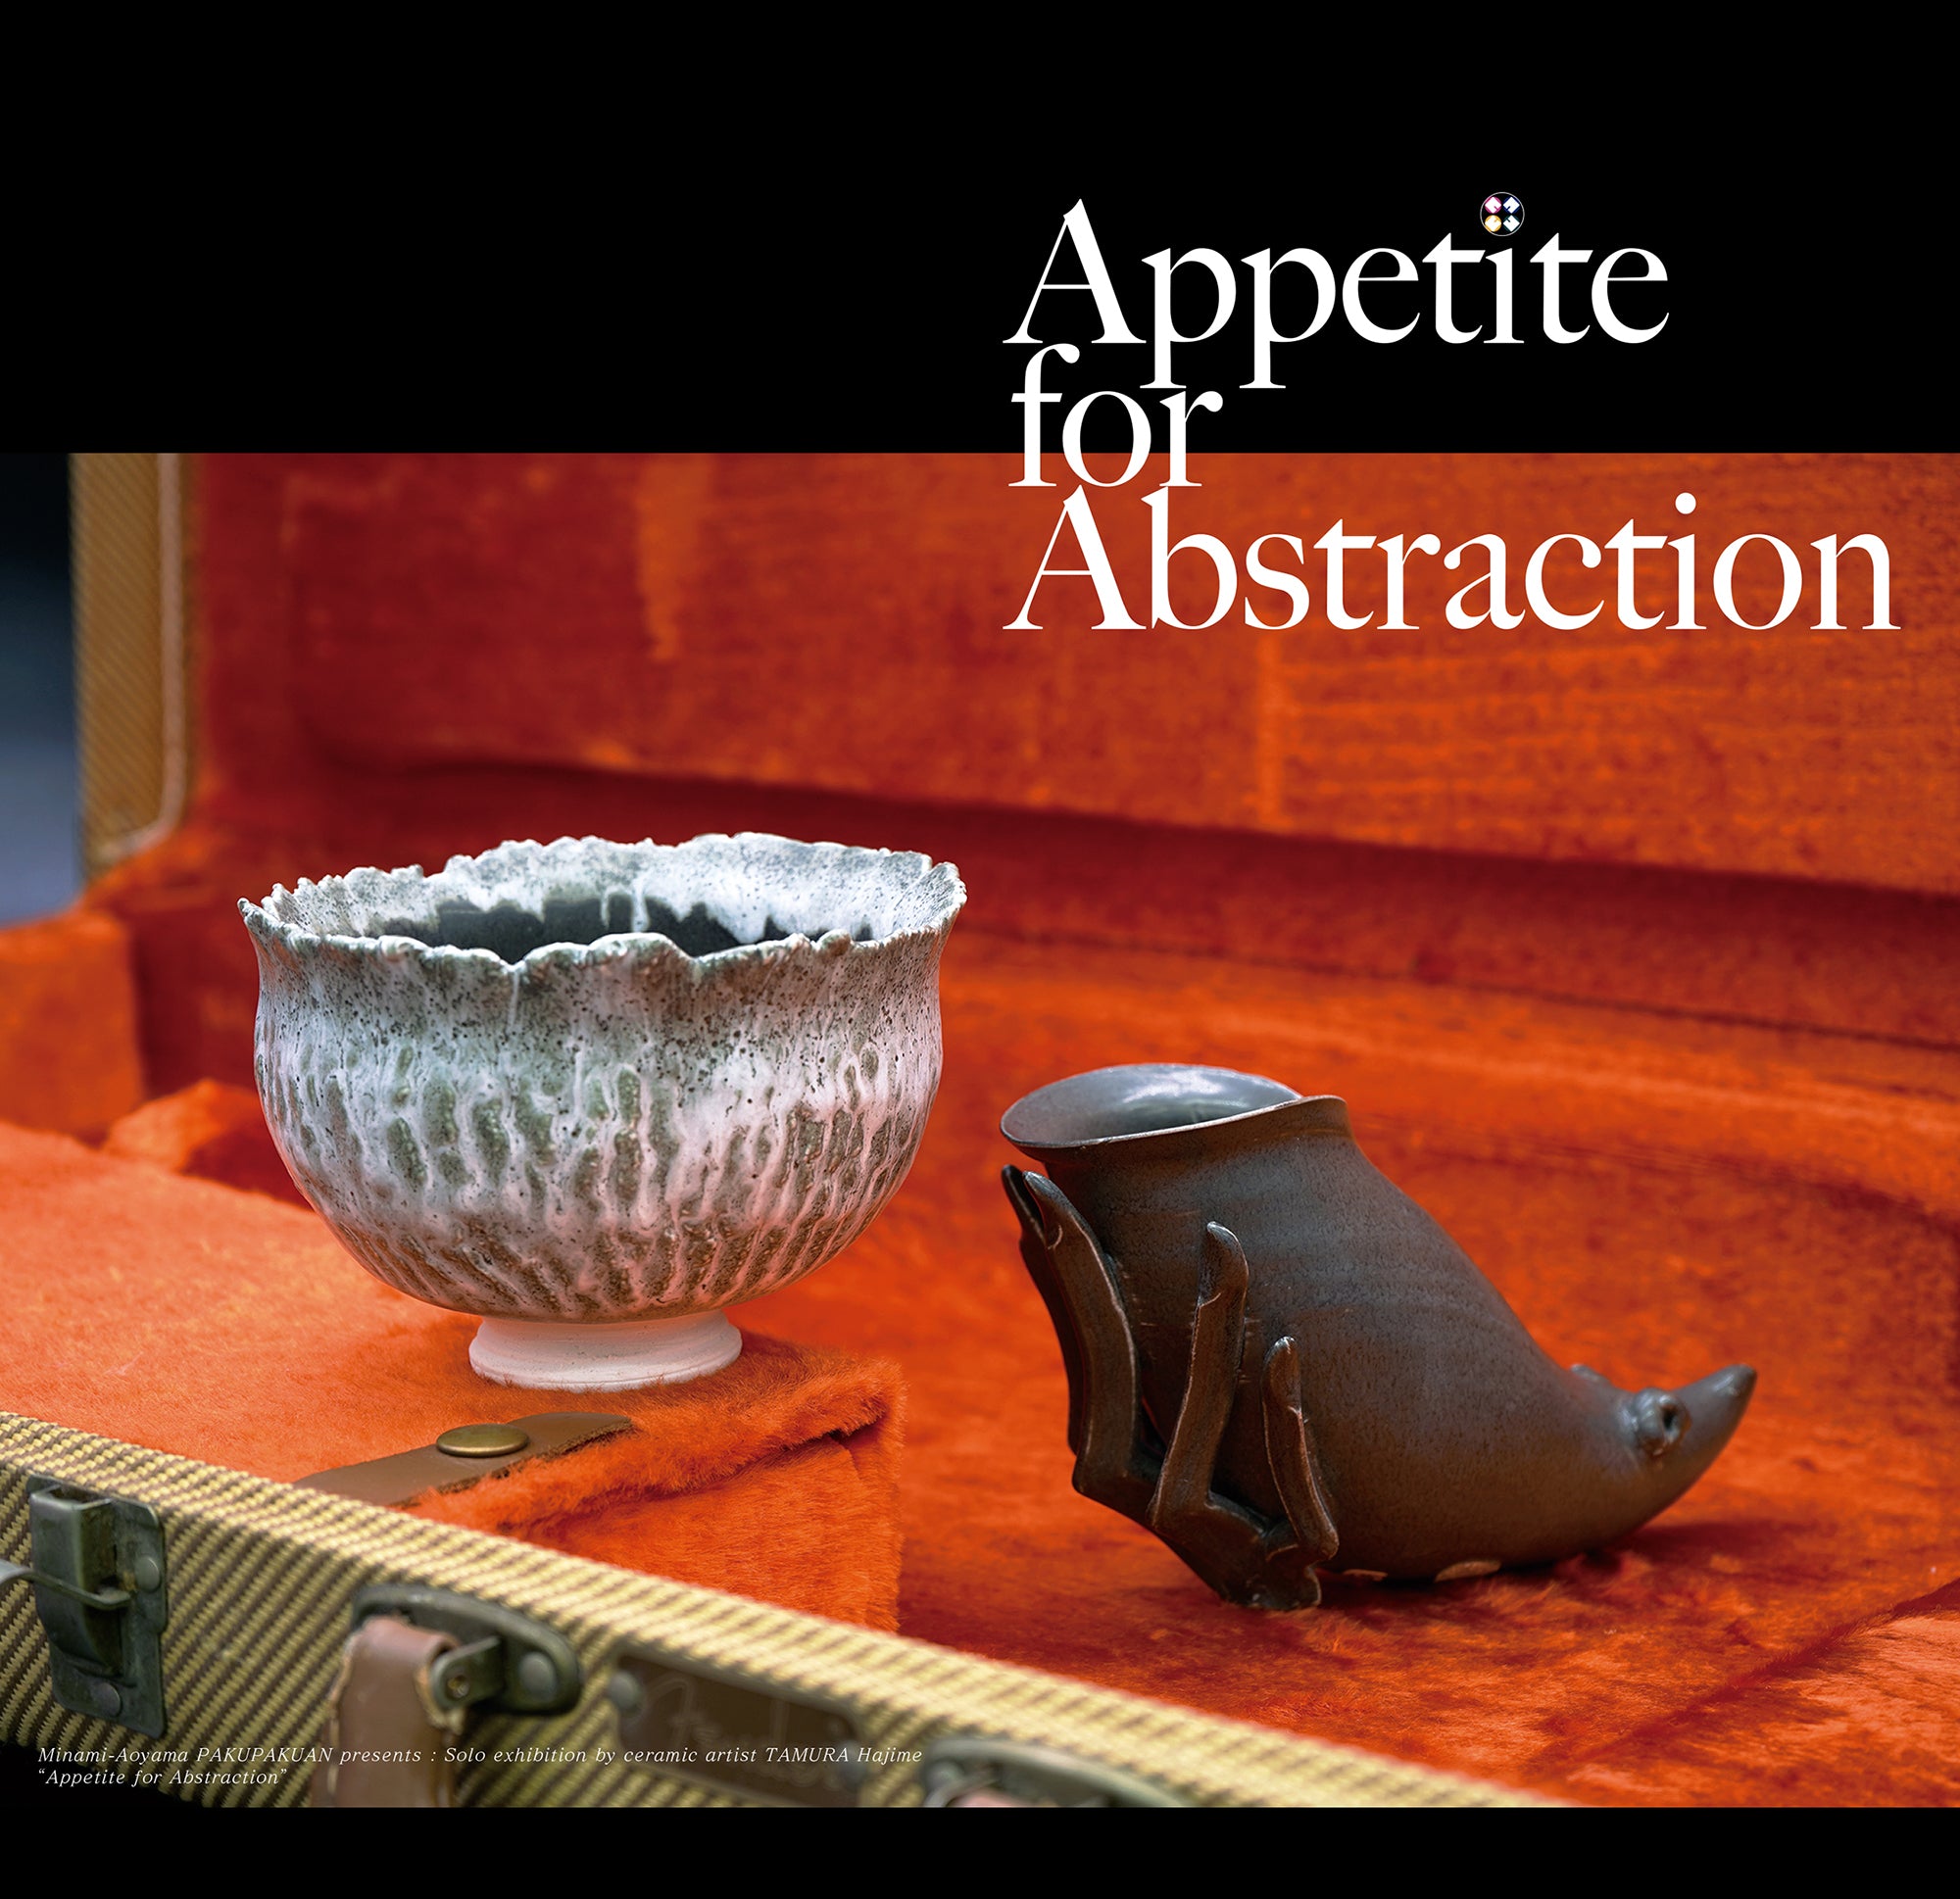 田村 一 展『Appetite for Abstraction』　TAMURA Hajime's solo exhibition "Appetite for Abstraction"　本日より公開スタートしました